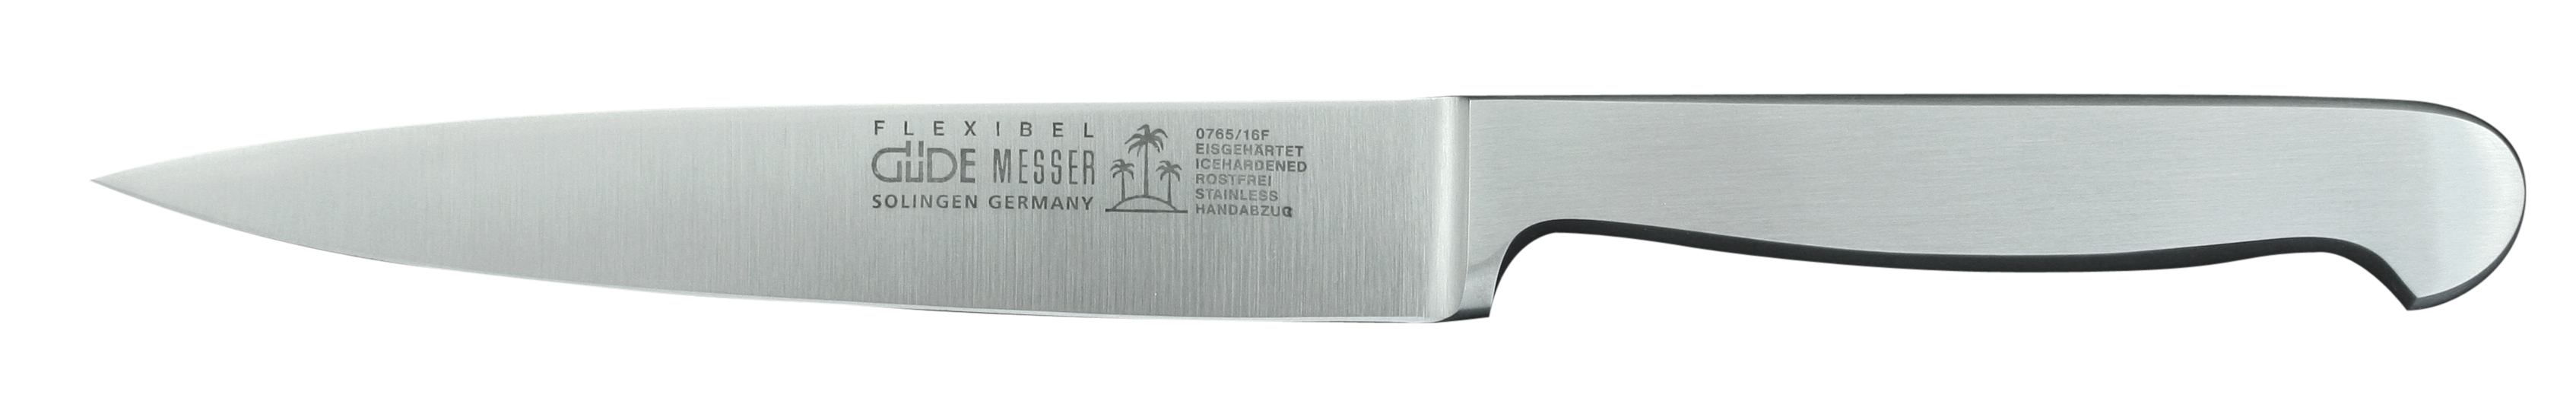 Güde Kappa Filiermesser 16 cm flexibel / Klinge und Griff aus CVM-Stahl